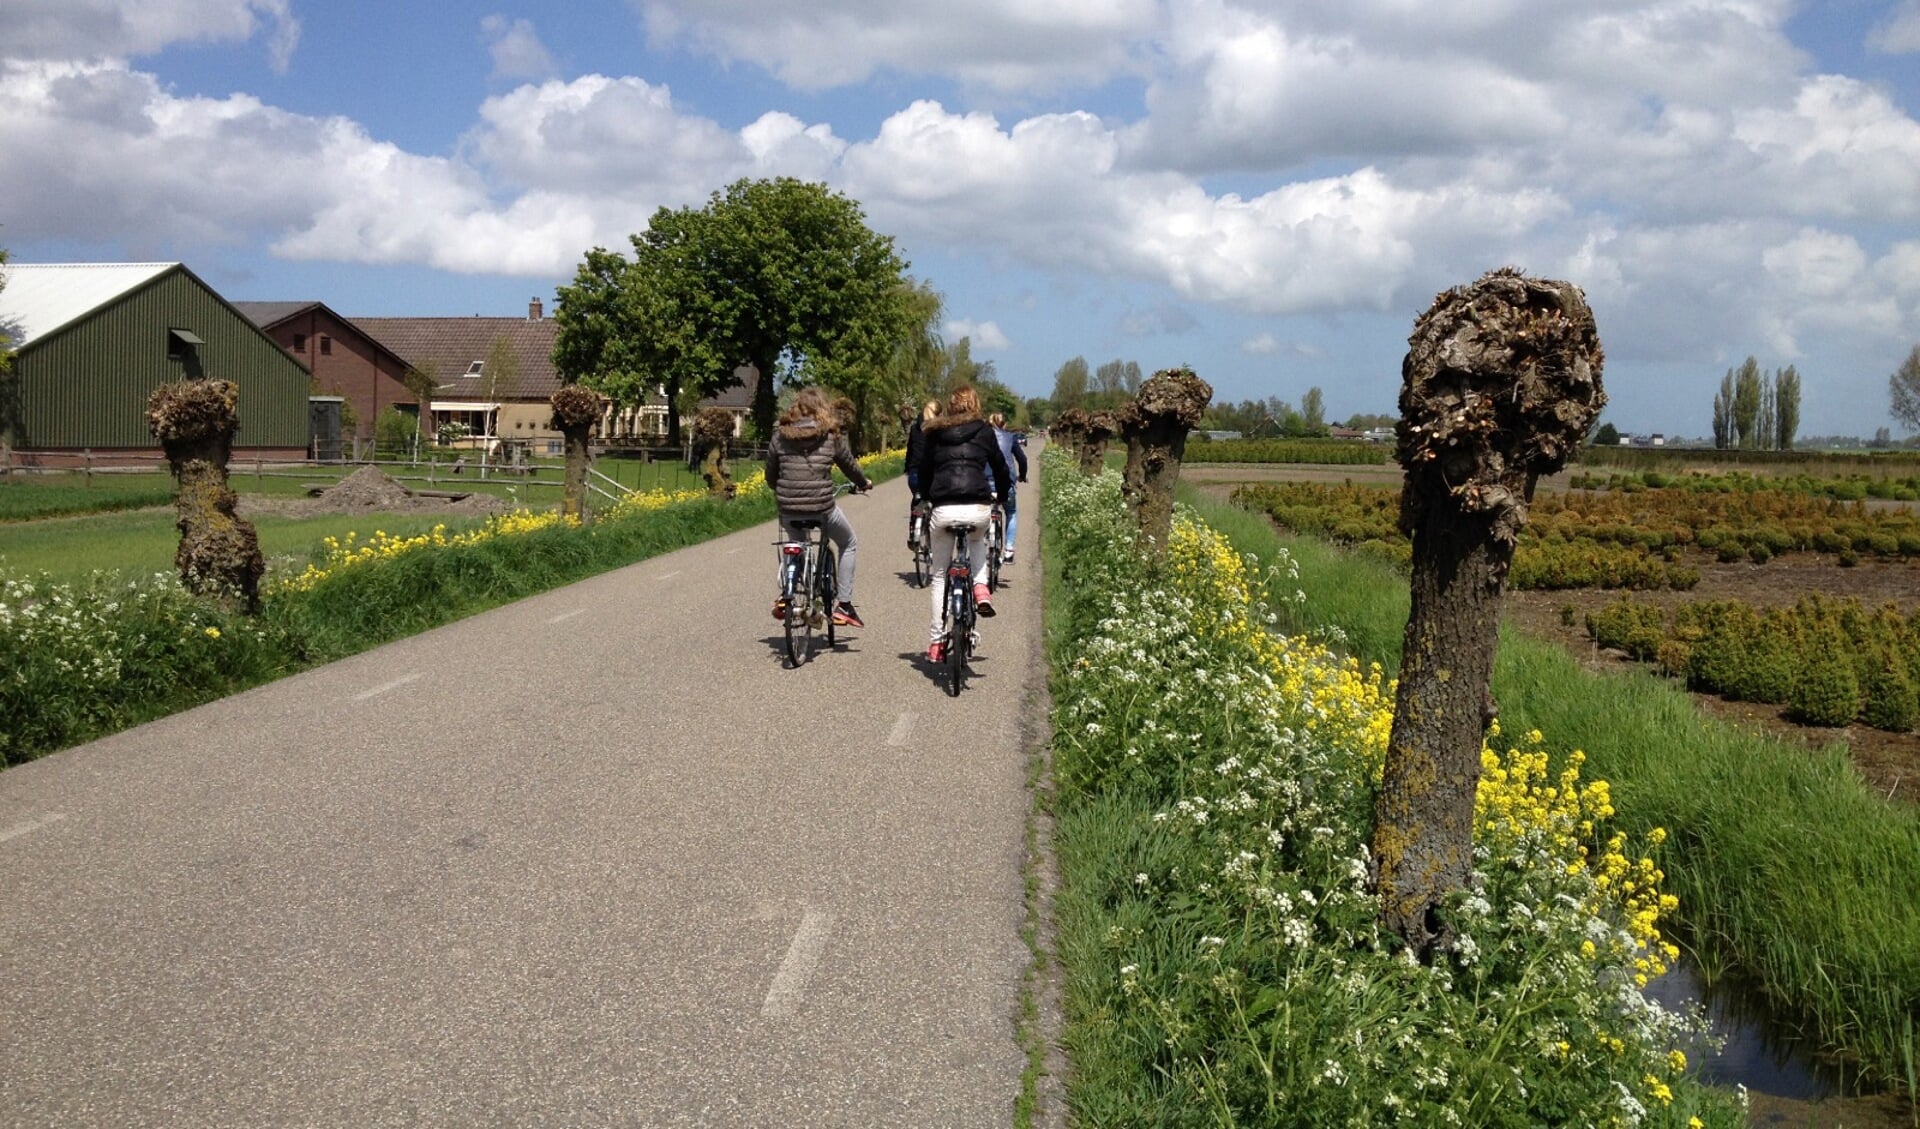 De route is circa 23 km lang en brengt u langs een aantal watervriendelijke plekken en waterpunten in de gemeente (foto: Martijn Mastenbroek).